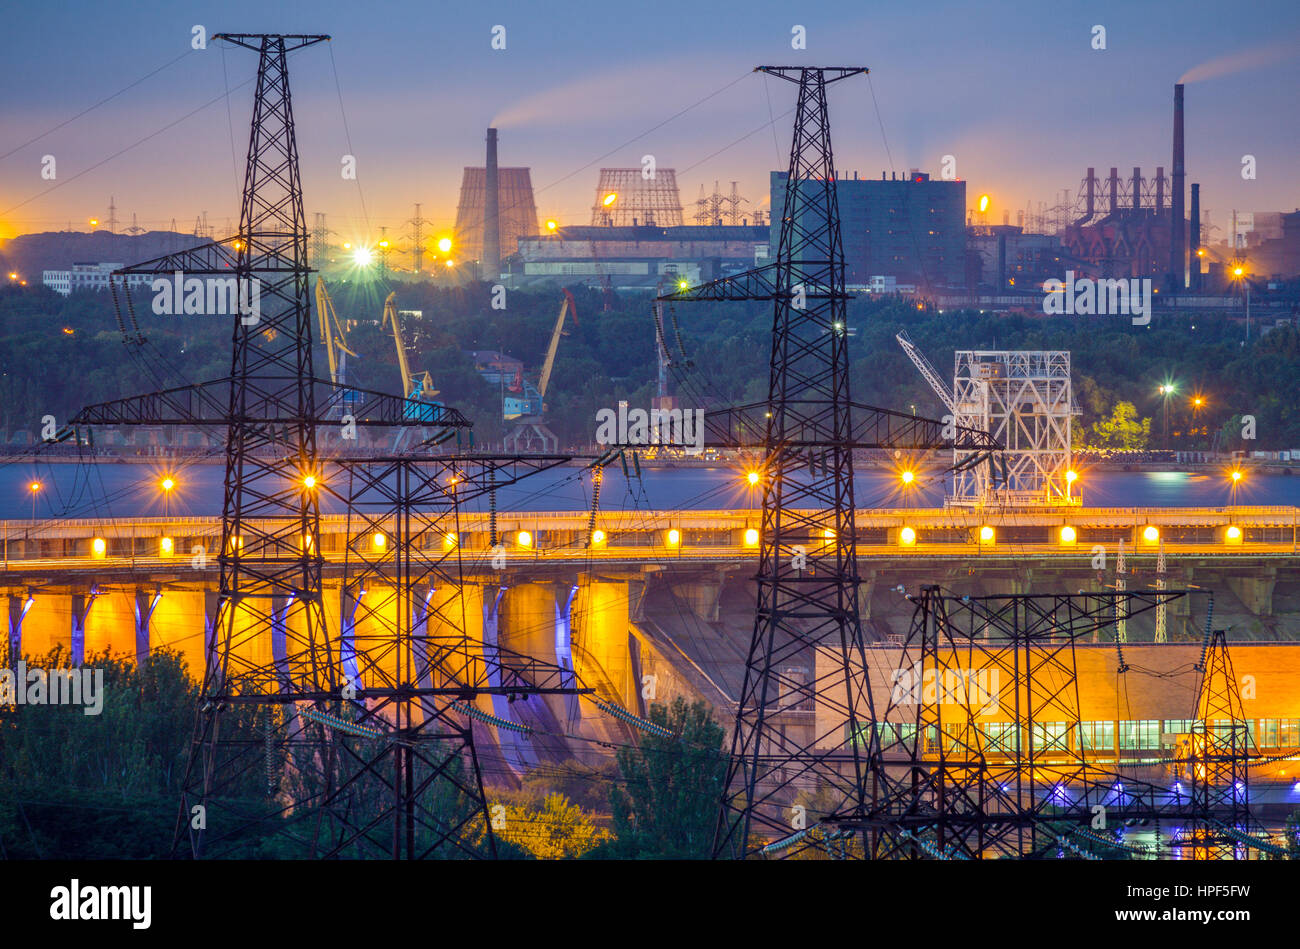 Sicht der Industrie mit Powerlines, Dneproges Staudamm, Frachthafen und Hüttenwerke in Saporoschje, Ukraine Stockfoto